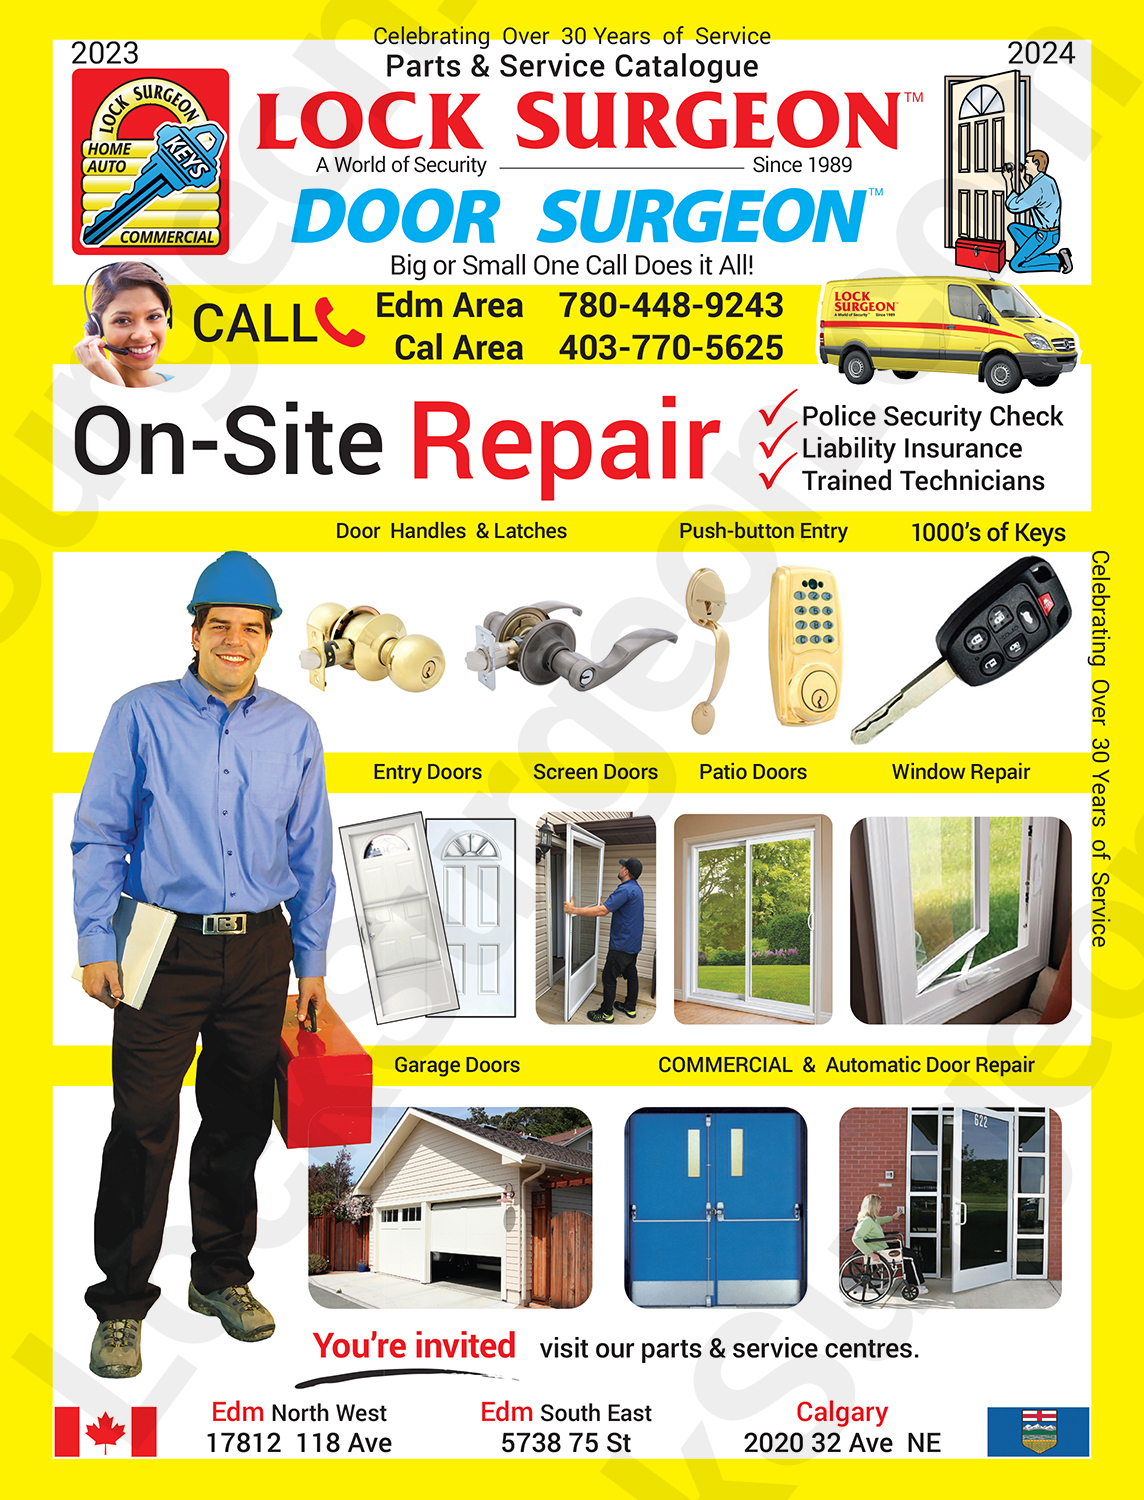 Lock Surgeon commercial on-site door repair, entry doors, screen doors, patio doors & window repair.